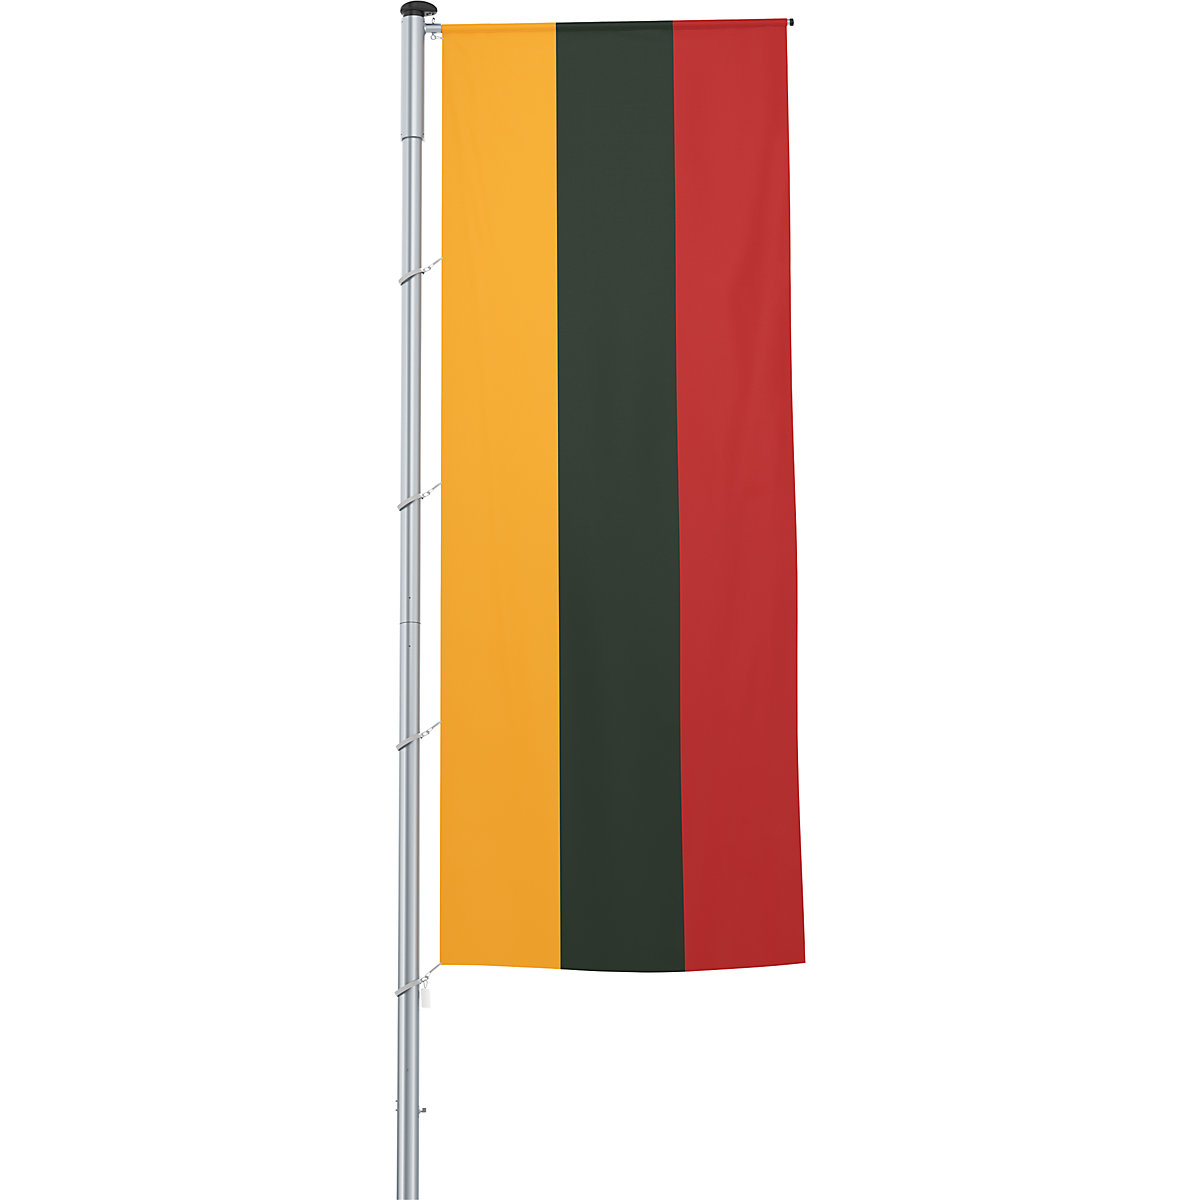 Gémes zászló/országzászló – Mannus, méret 1,2 x 3 m, Litvánia-12